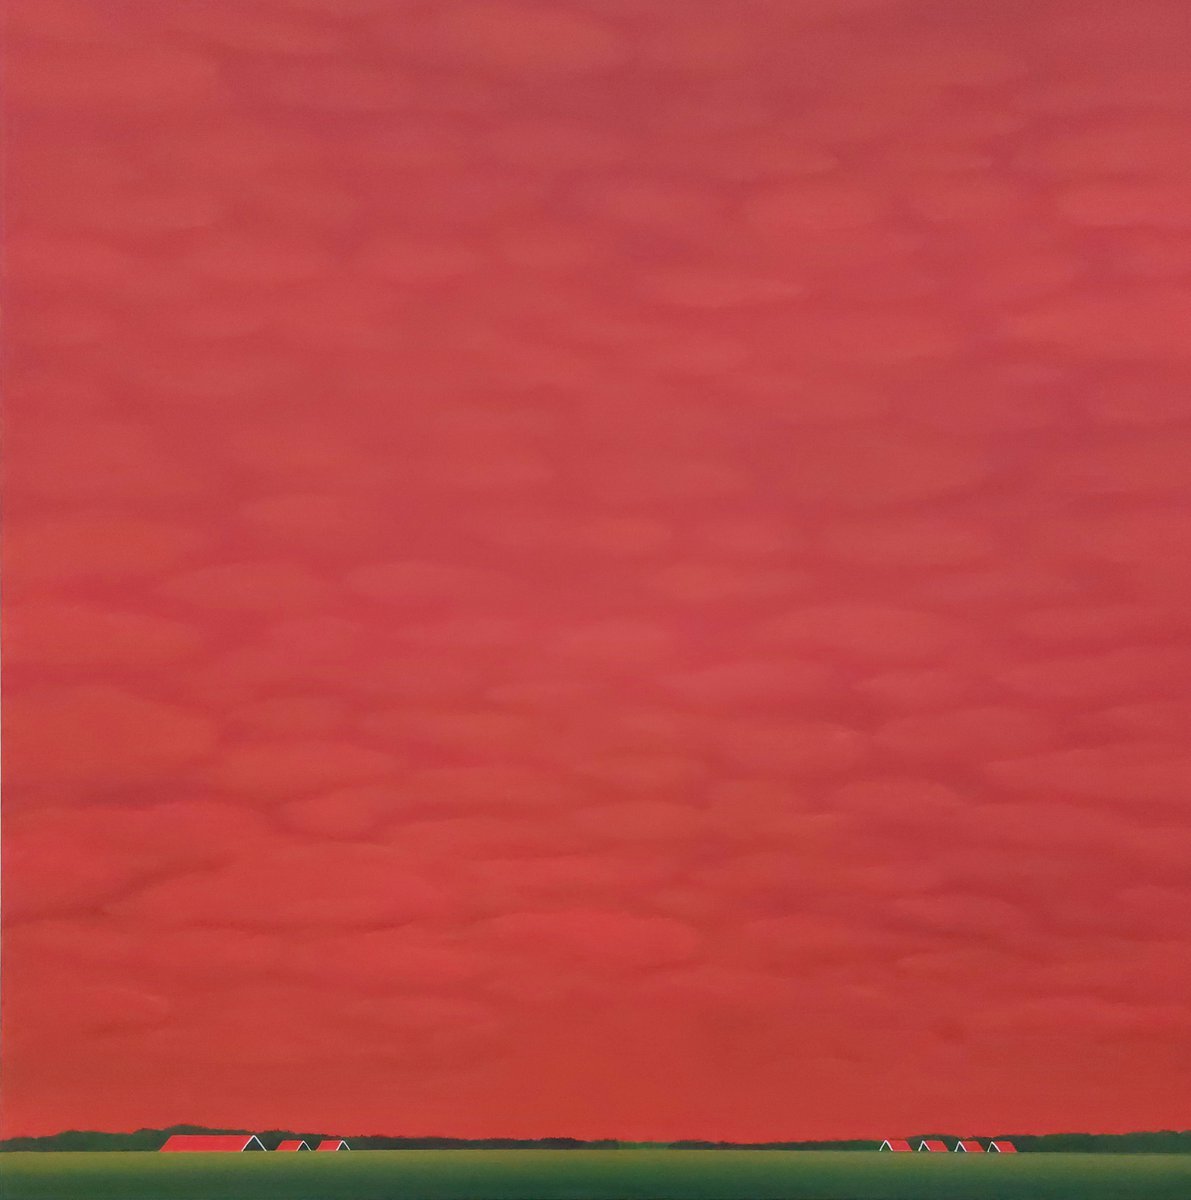 Red Sky (August) by Nelly van Nieuwenhuijzen